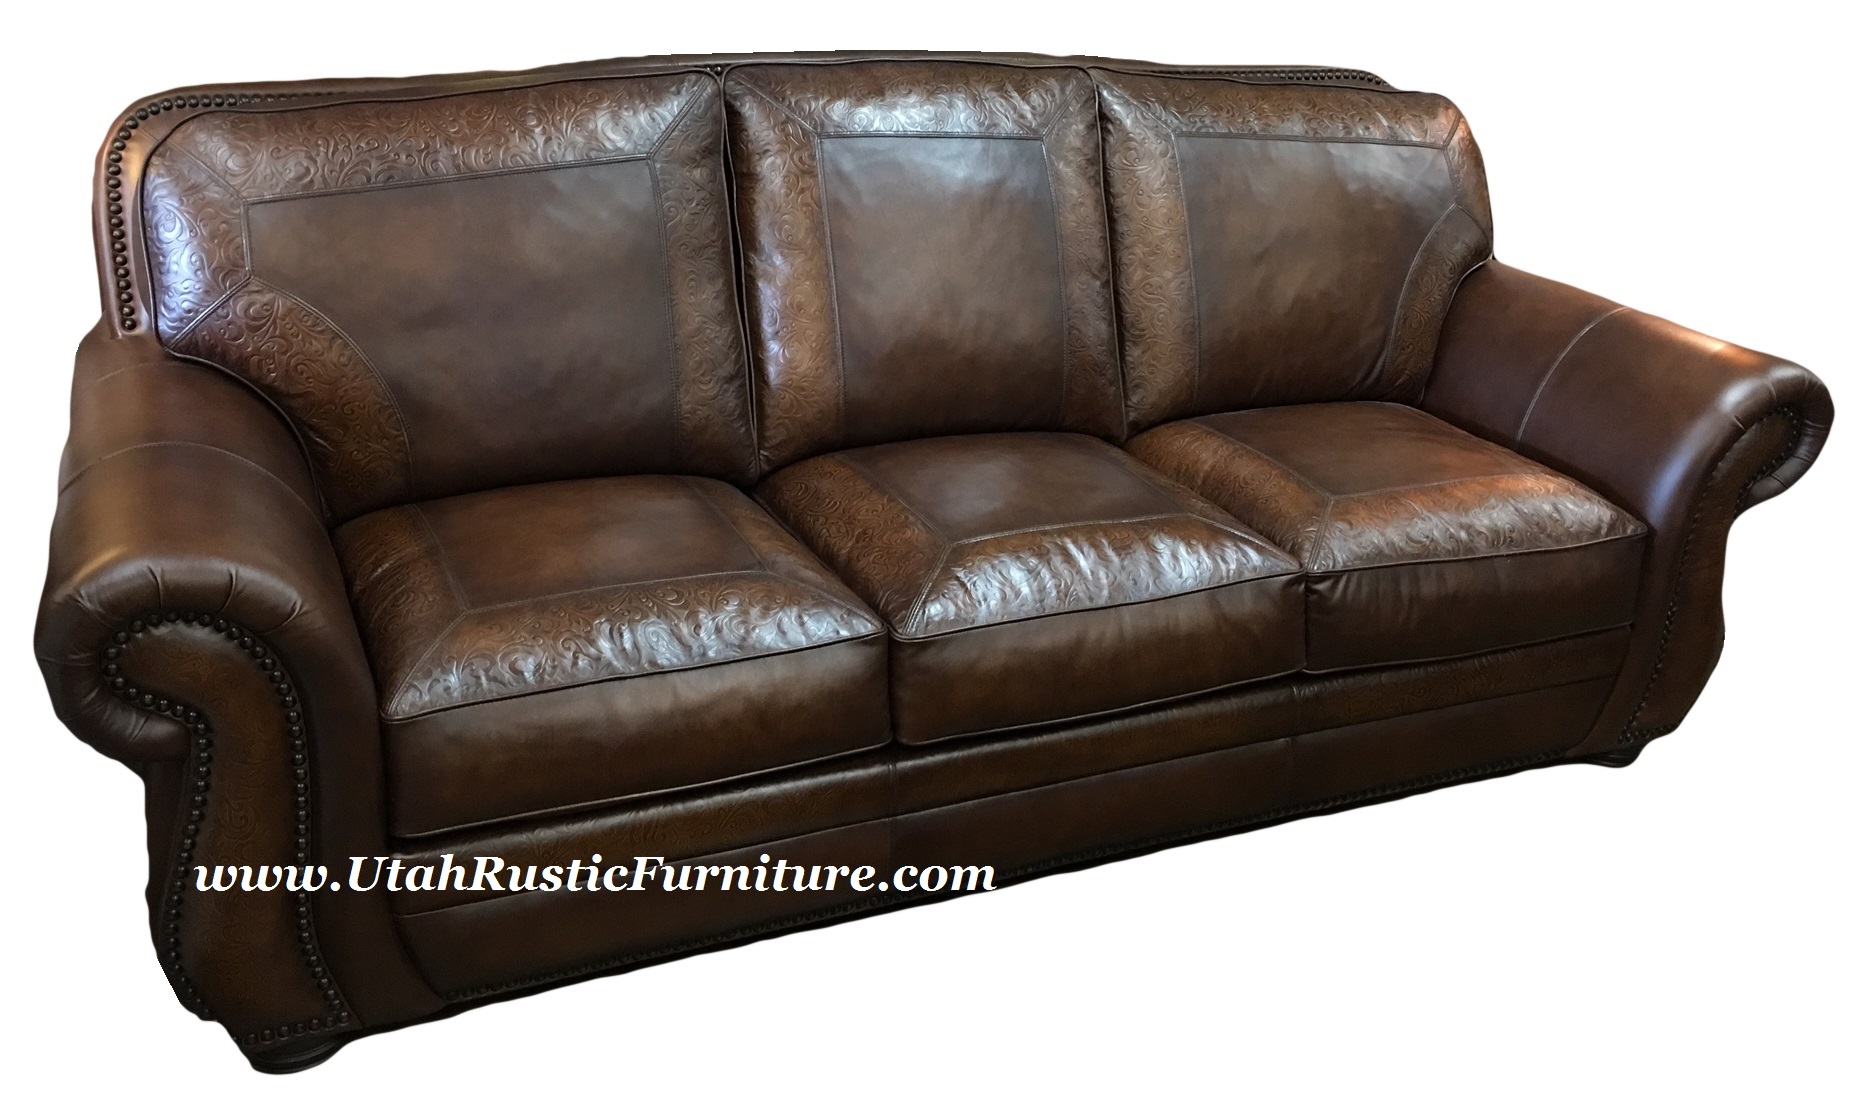 Bradley s Furniture Etc Artistic Leather Premium Rustic Sofas